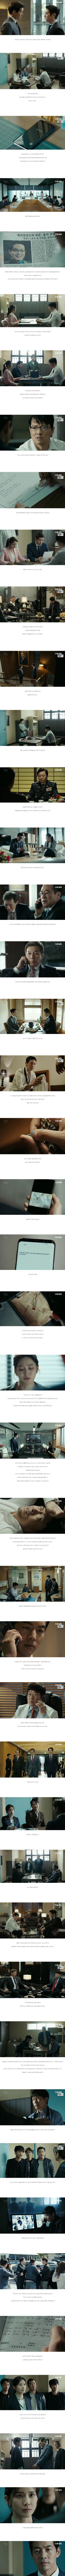 episode 13 captures for the Korean drama 'Whisper'